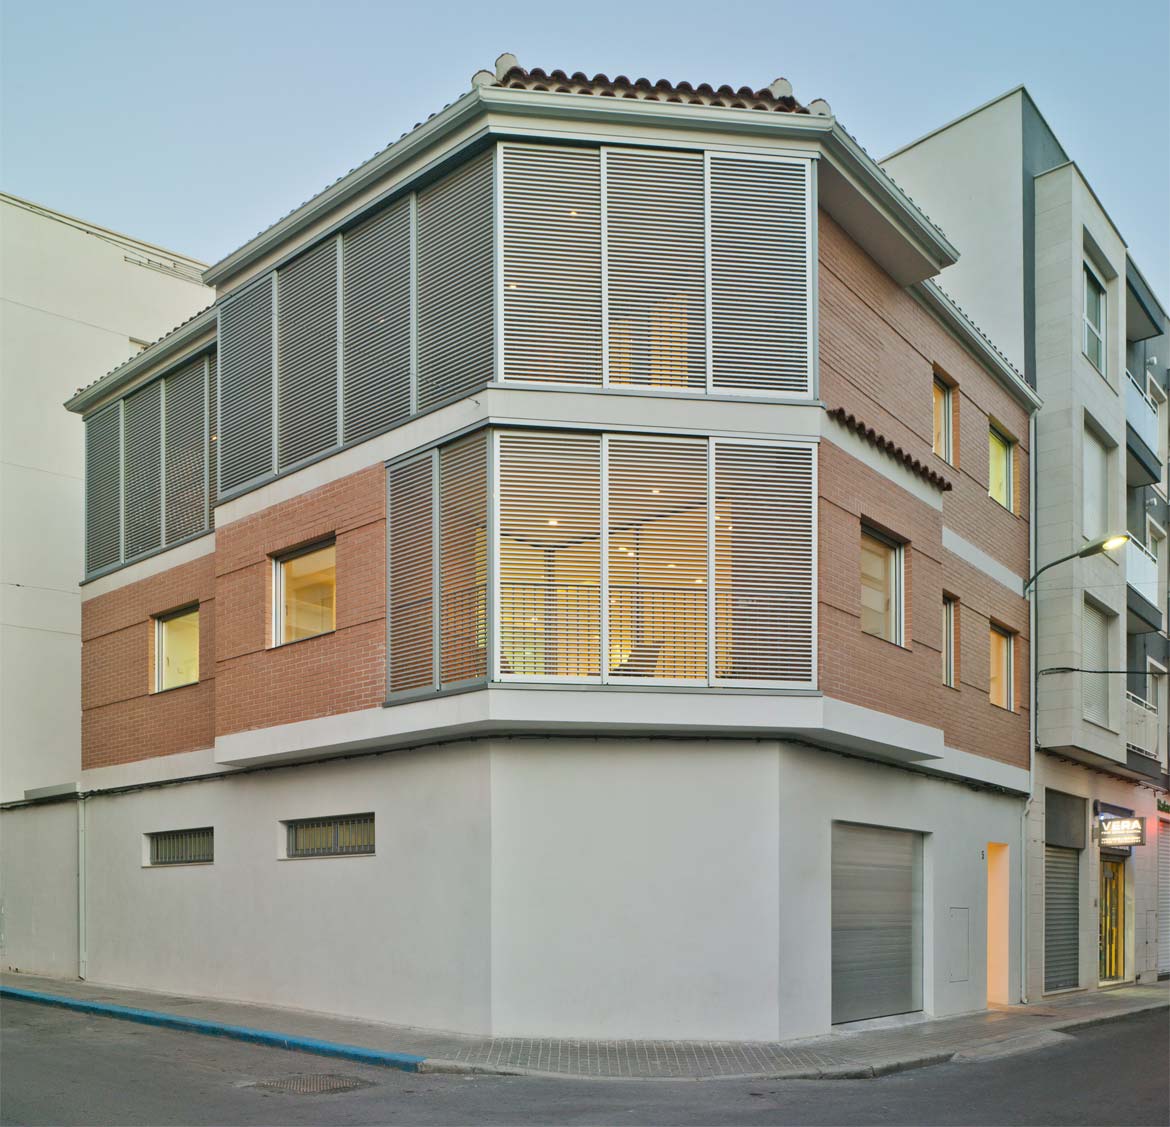 Reforma integral de vivienda en Petrer para Tobías y Reme - Pablo Muñoz Payá Arquitectos 23